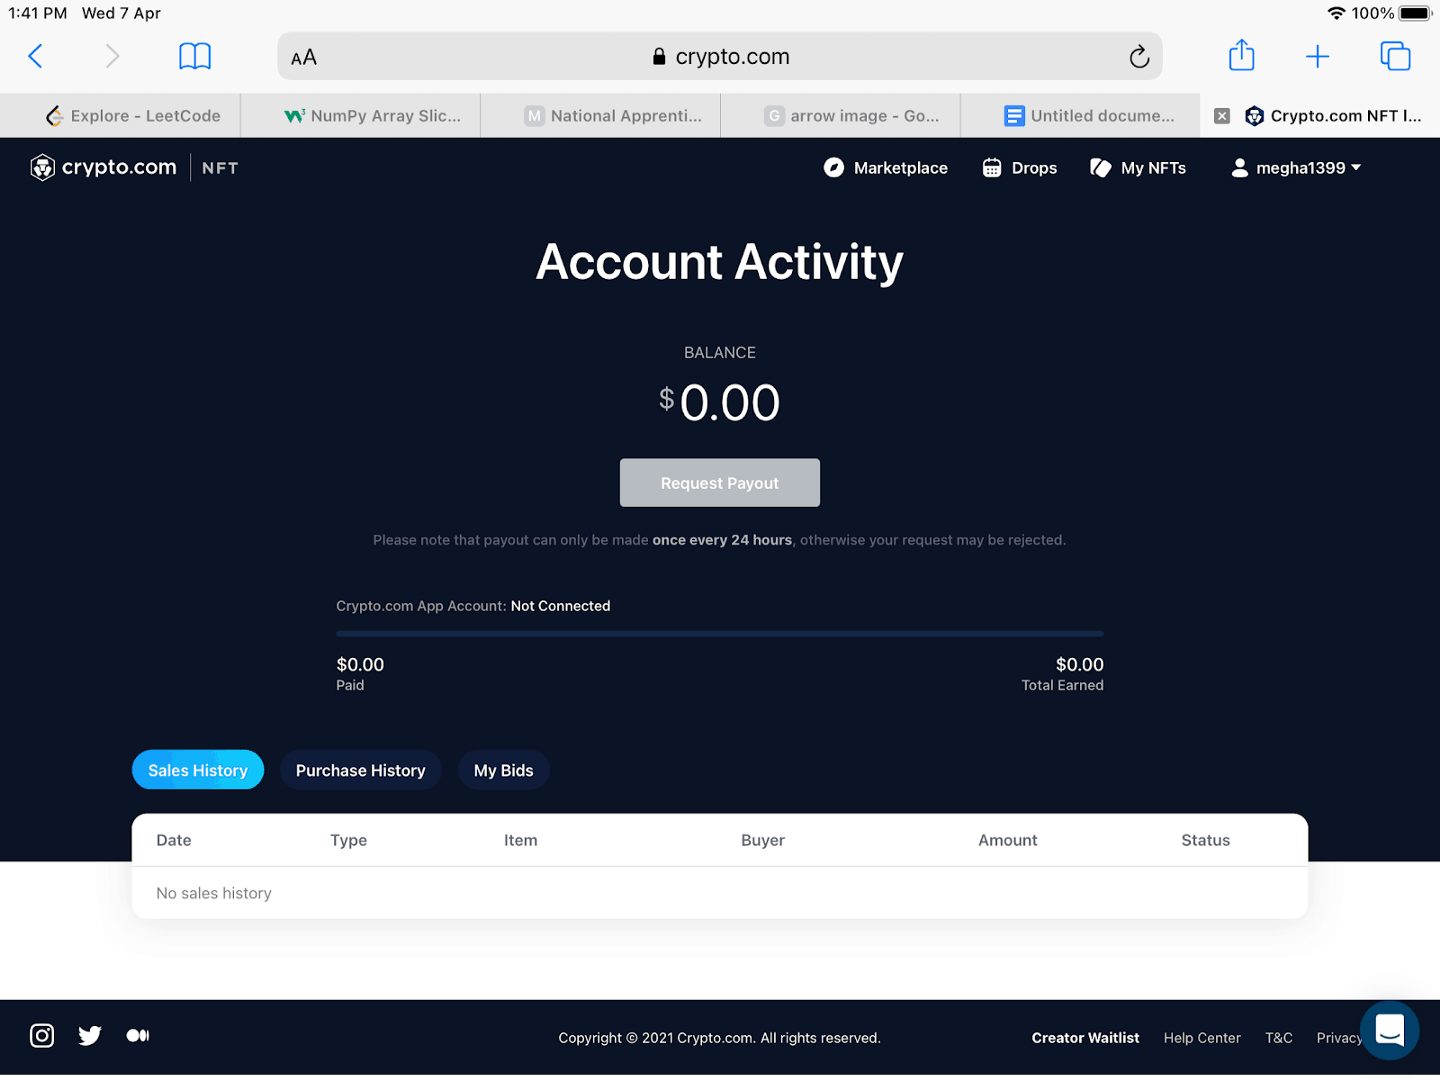 Account Activity